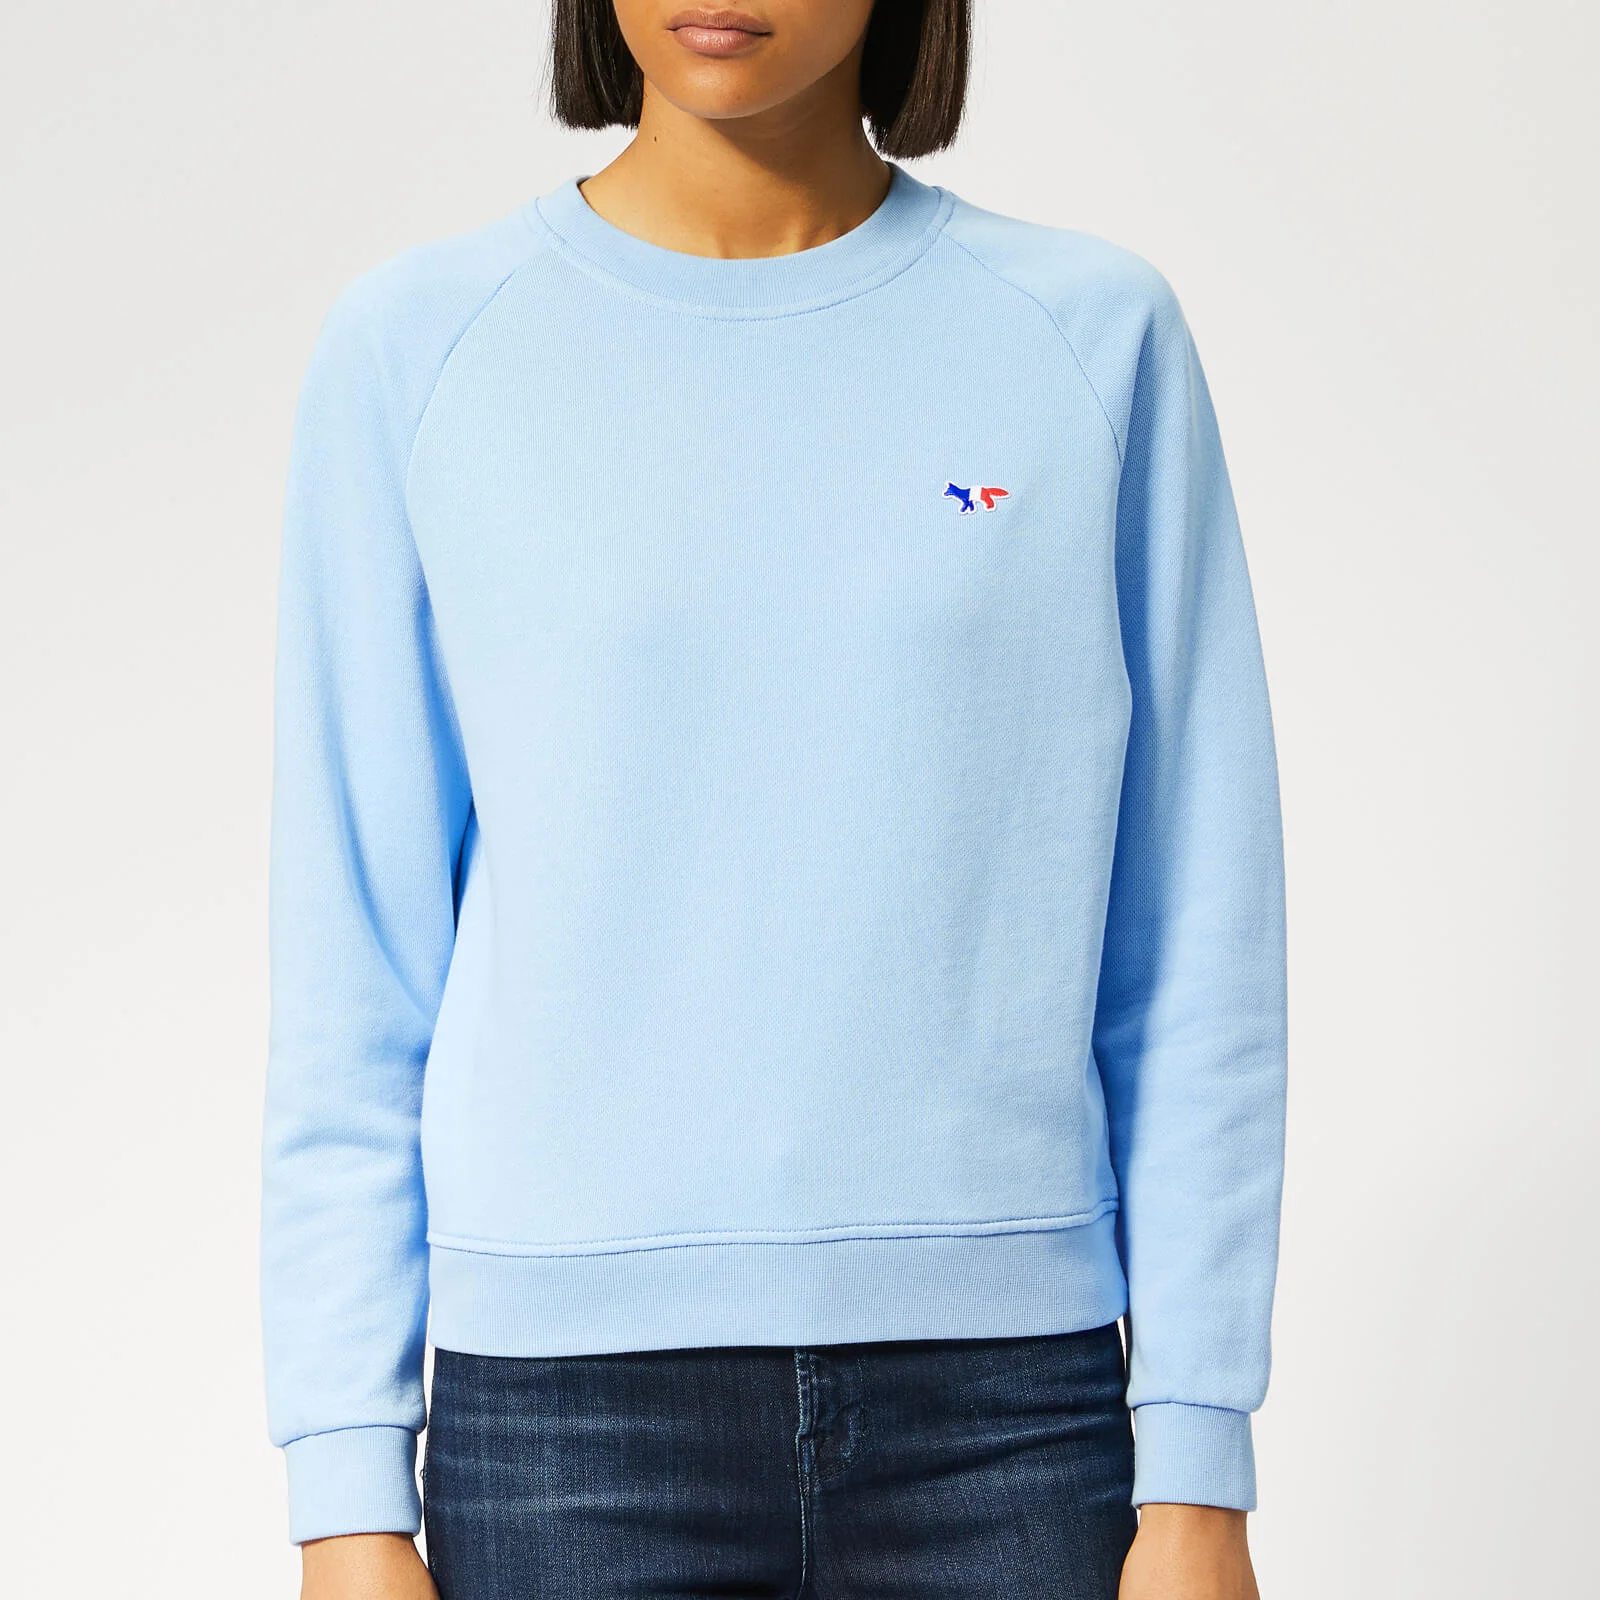 Maison Kitsuné Women's Tricolor Fox Patch Sweatshirt - Light Blue Image 1